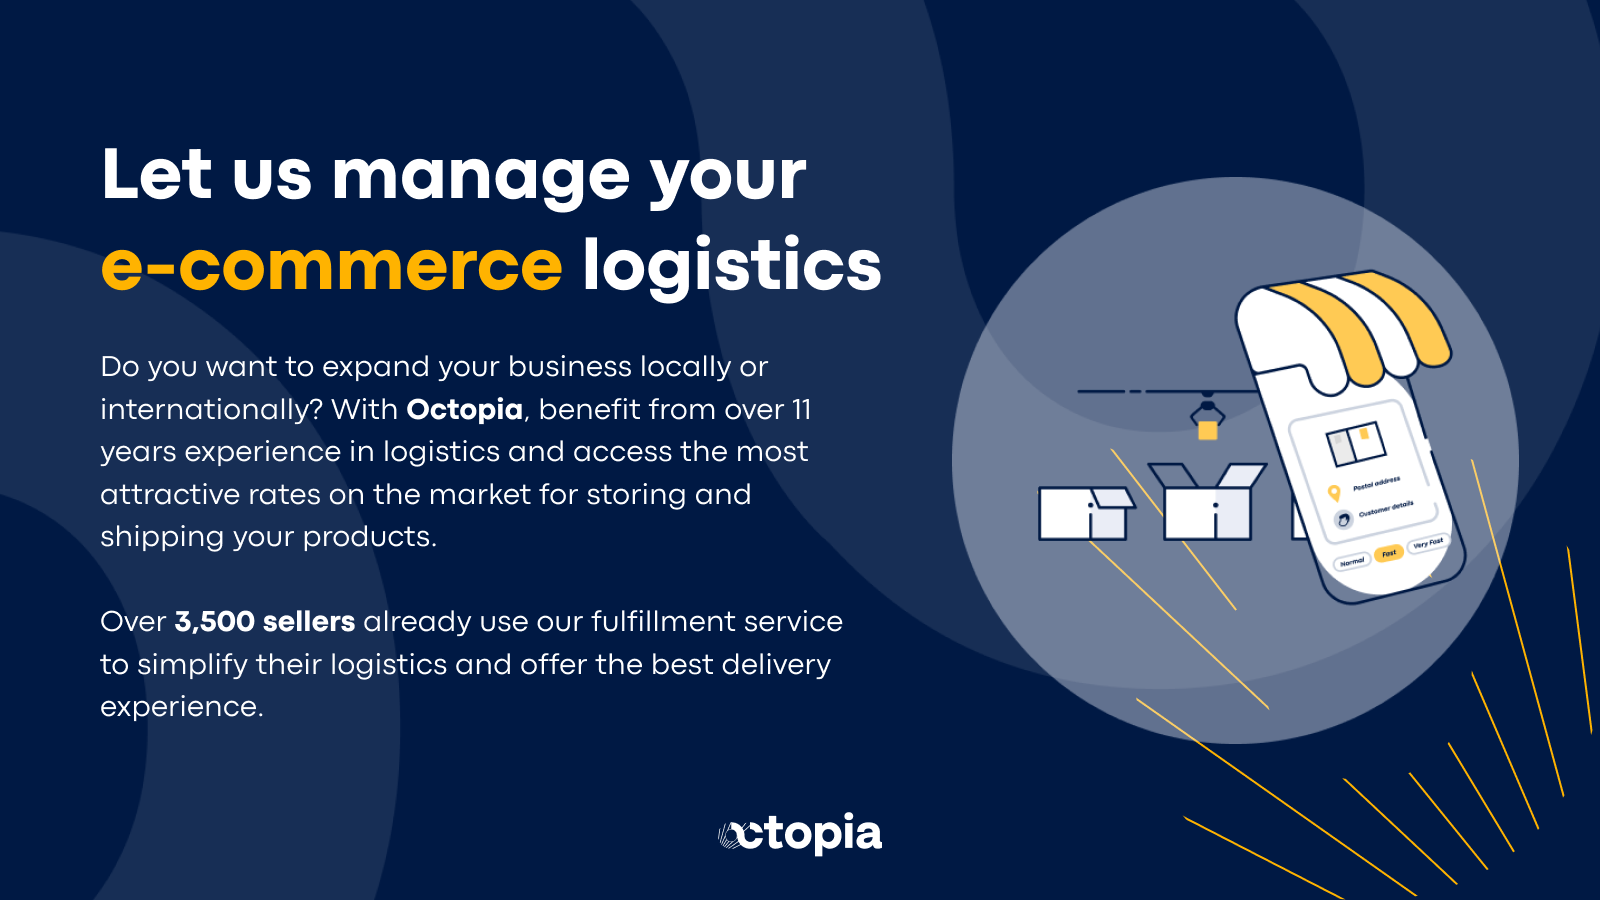 Let us manage your e-commerce logistics